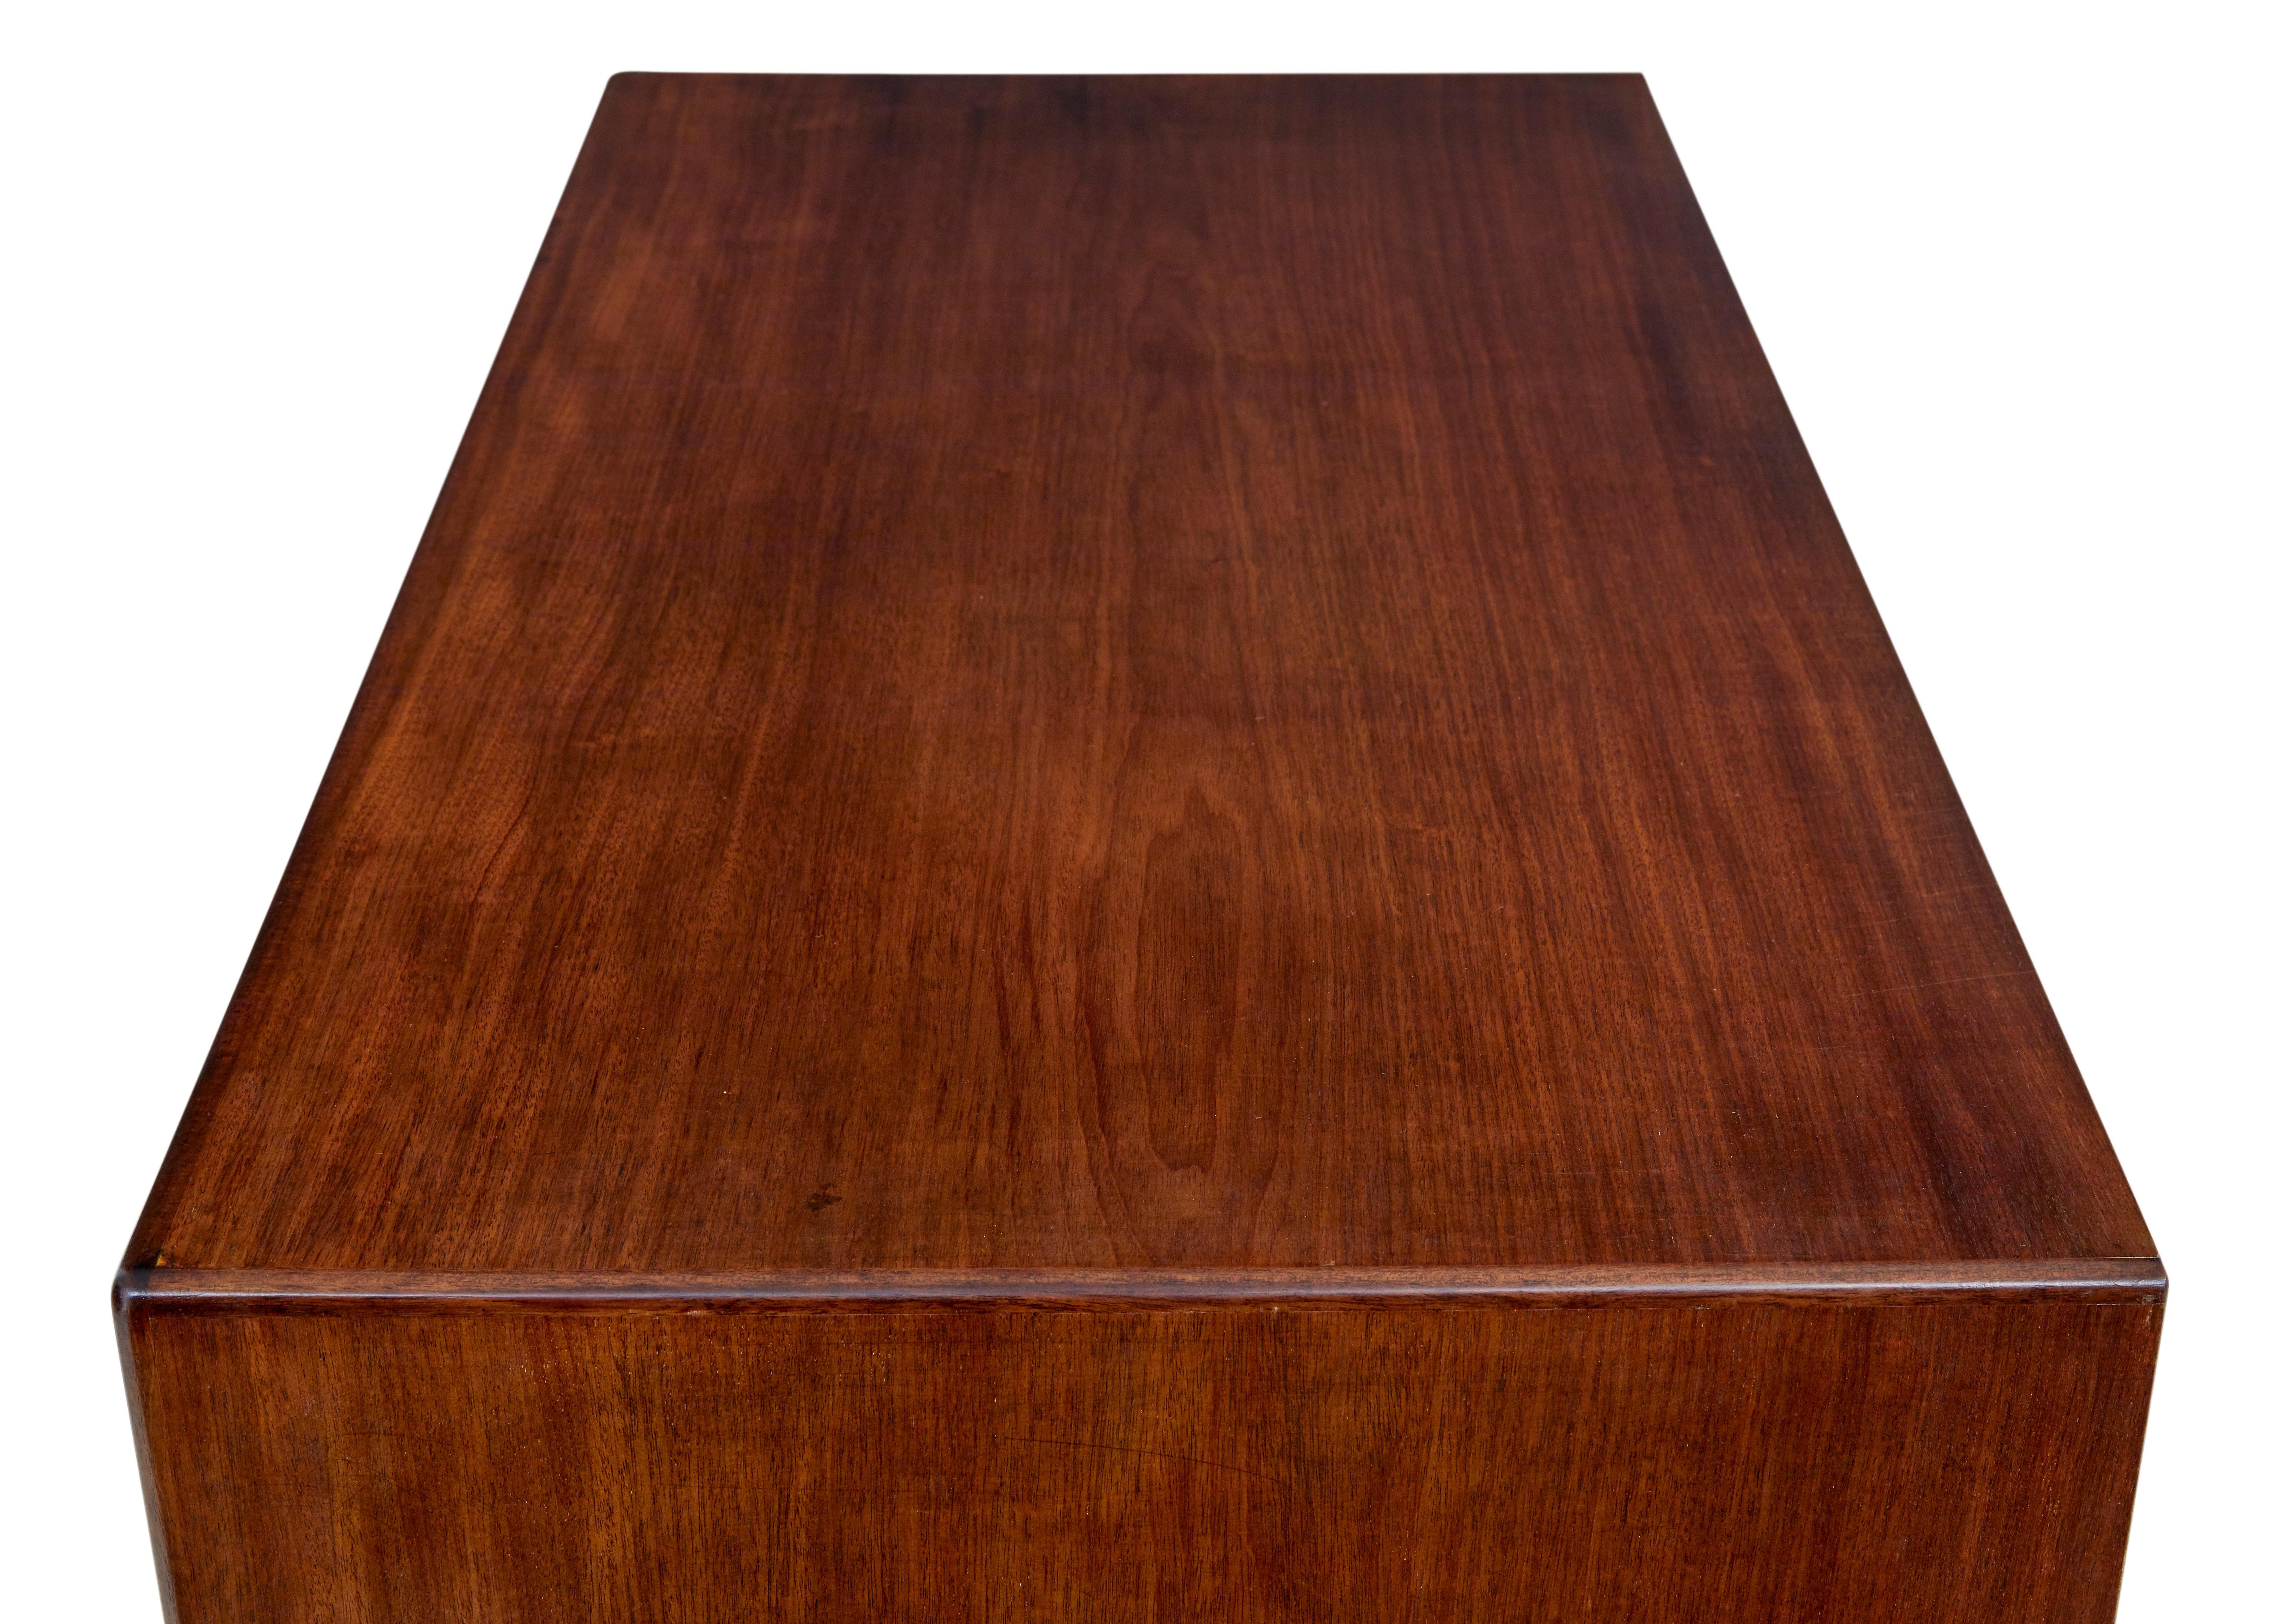 Dänische Teakholzkommode aus der Mitte des 20. Jahrhunderts, um 1960.

Ausgestattet mit 6 abgestuften Schubladen, die jeweils mit Querbordüren und Formgriffen aus Massivholz versehen sind.  Die Truhe hat eine gute Größe und eignet sich perfekt für